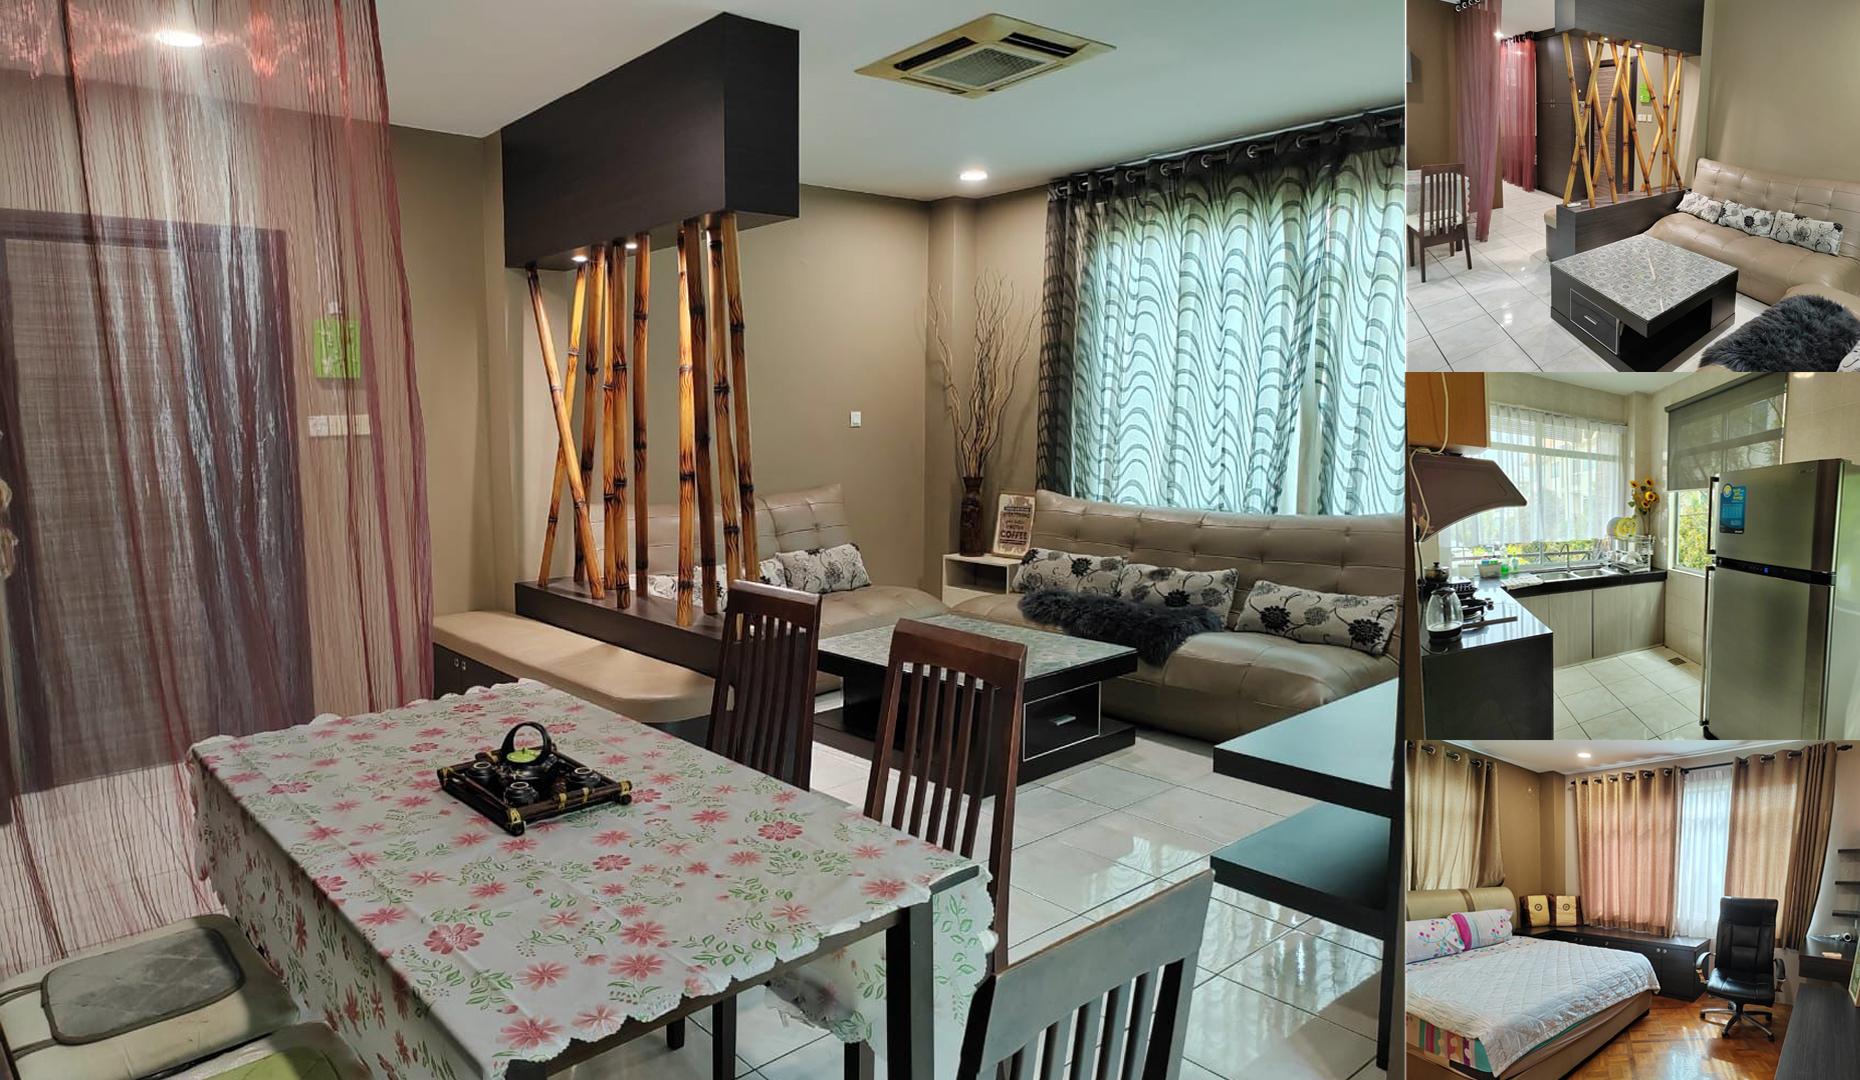 Eden Height 3 Bedroom Unit for Rent in Kuching